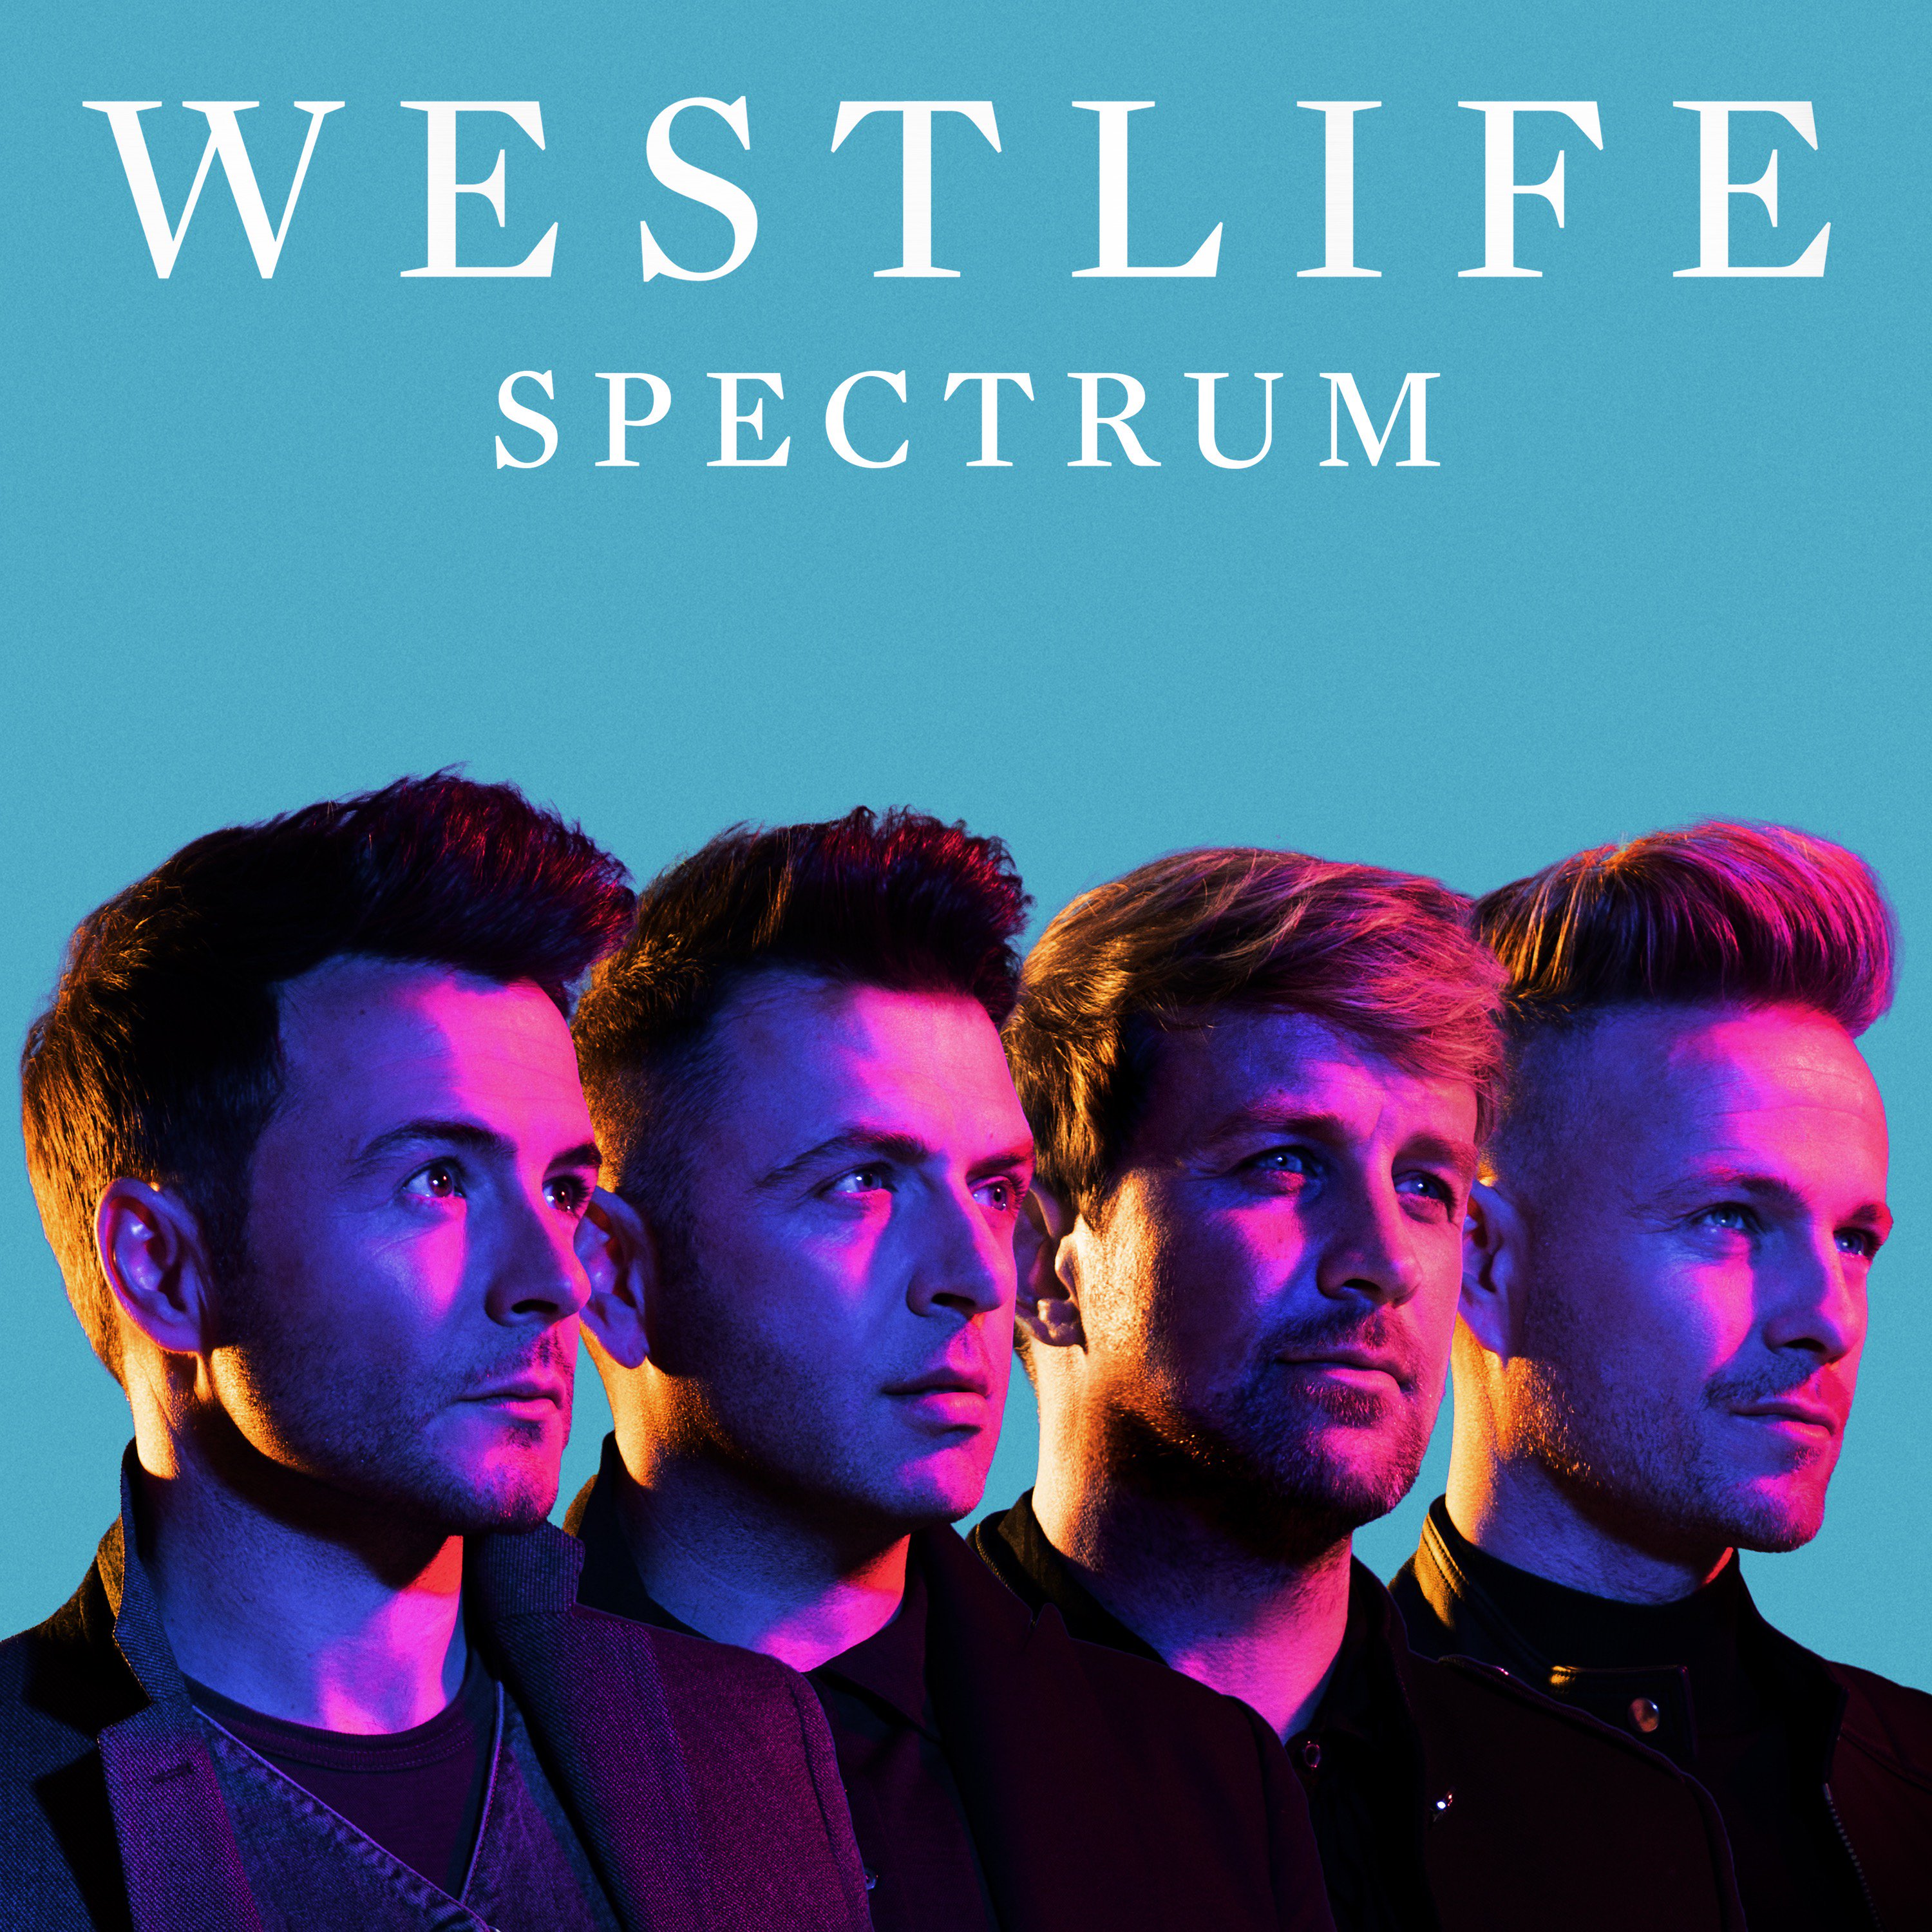 Westlife estrena su nuevo single ‘My Blood’ dentro de su próximo álbum ‘Spectrum’